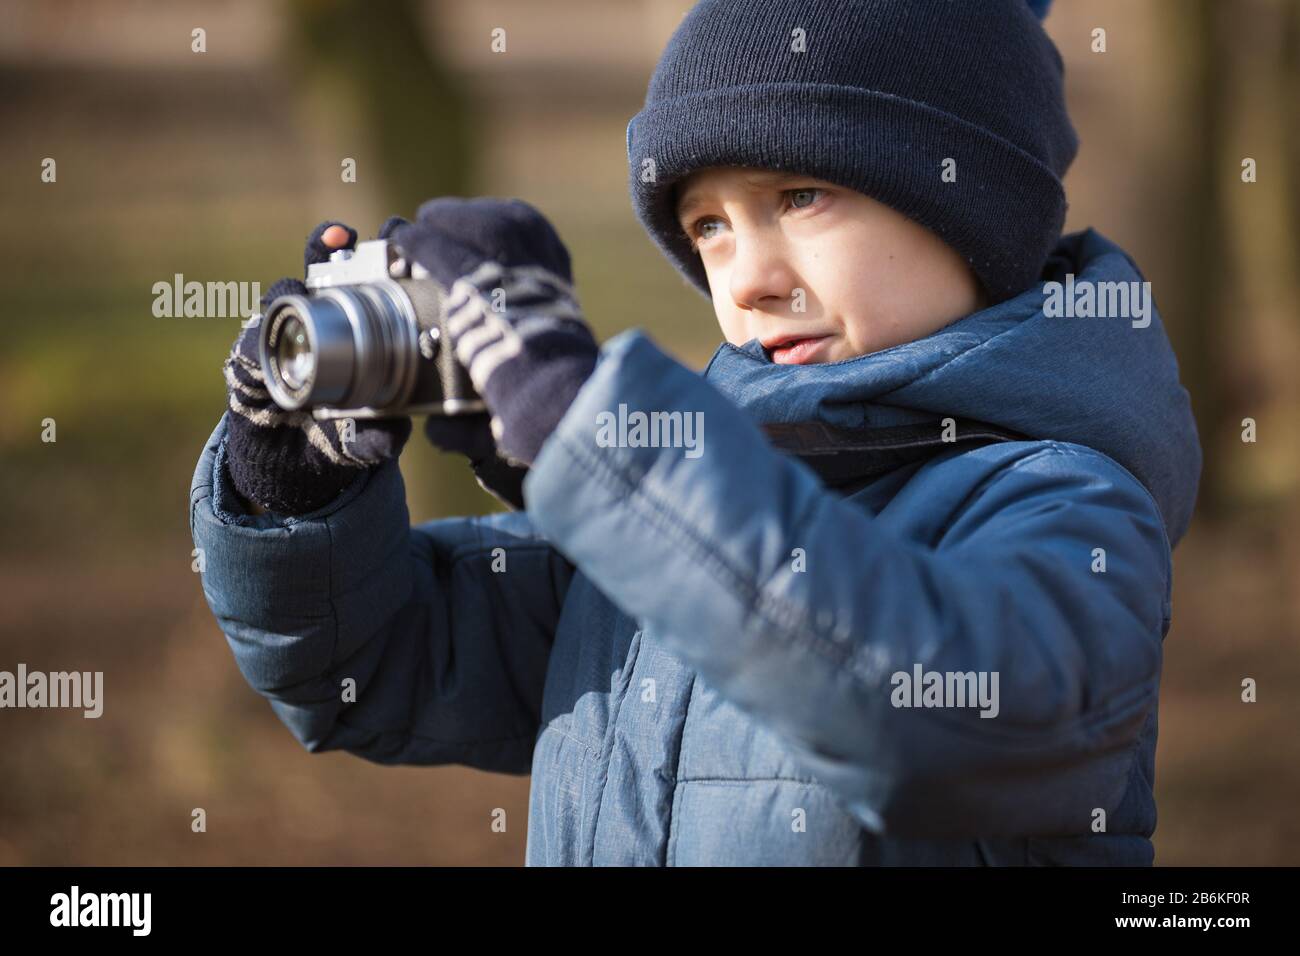 Jeune garçon avec appareil photo prenant des photos dans le parc Banque D'Images